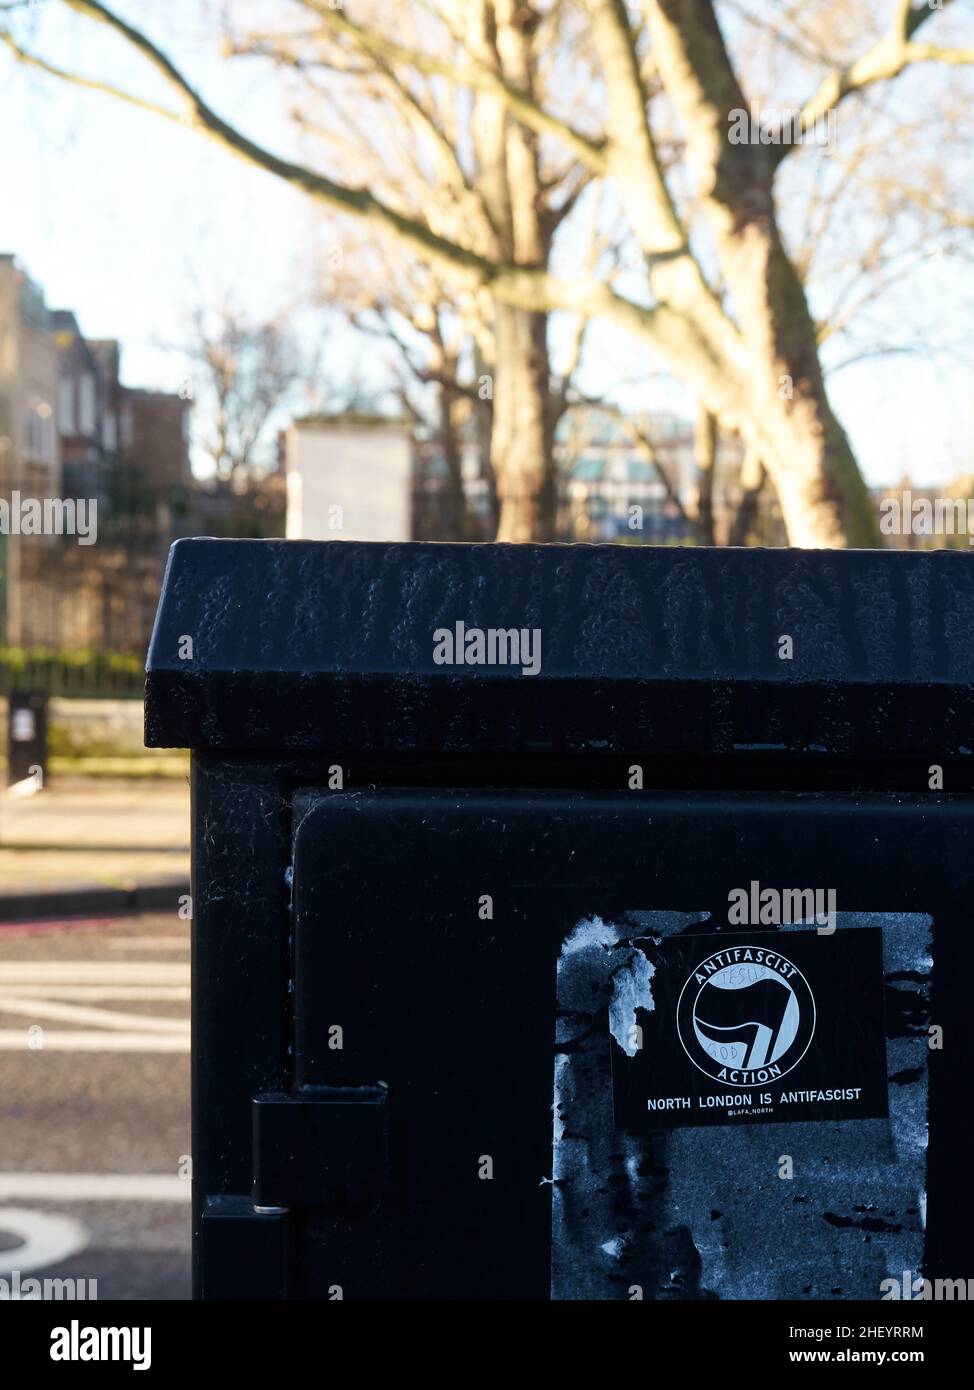 Politischer Ausdruck auf den Straßen von London, Großbritannien - Ein linker antifaschistischer Aufkleber auf der Seite einer Kommunikationsbox in der Nähe eines Londoner Parks. Stockfoto